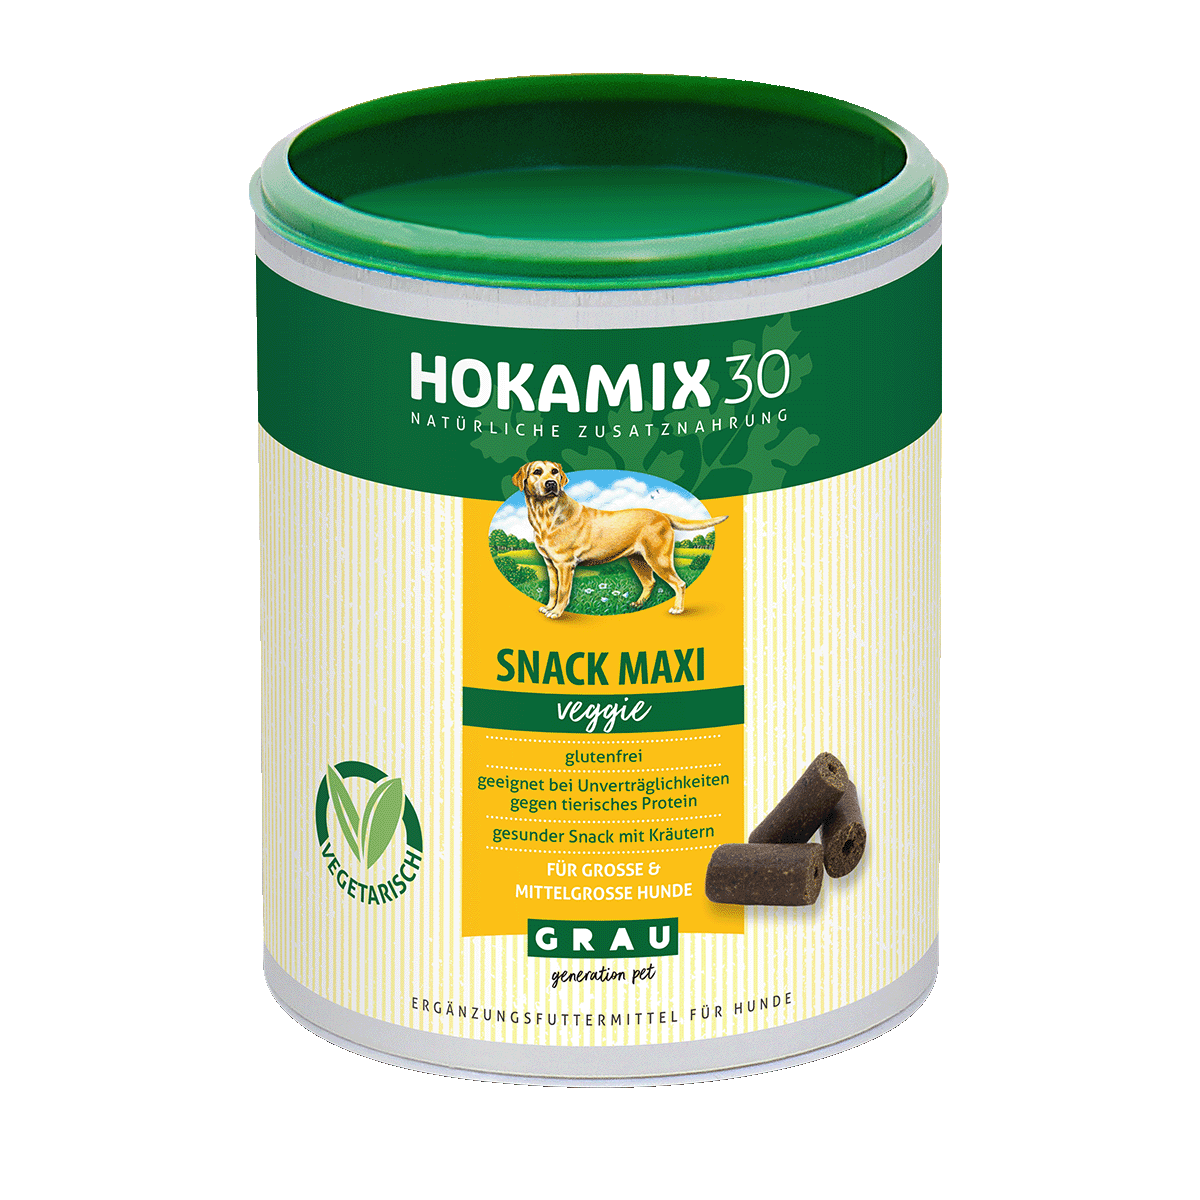 HOKAMIX30 Snack Maxi veggie ist die vegetarische Variante des HOKAMIX30 Snacks für große Hunde und enthält pro Snack ebenfalls 5 g der Kräutermischung HOKAMIX30 Classic